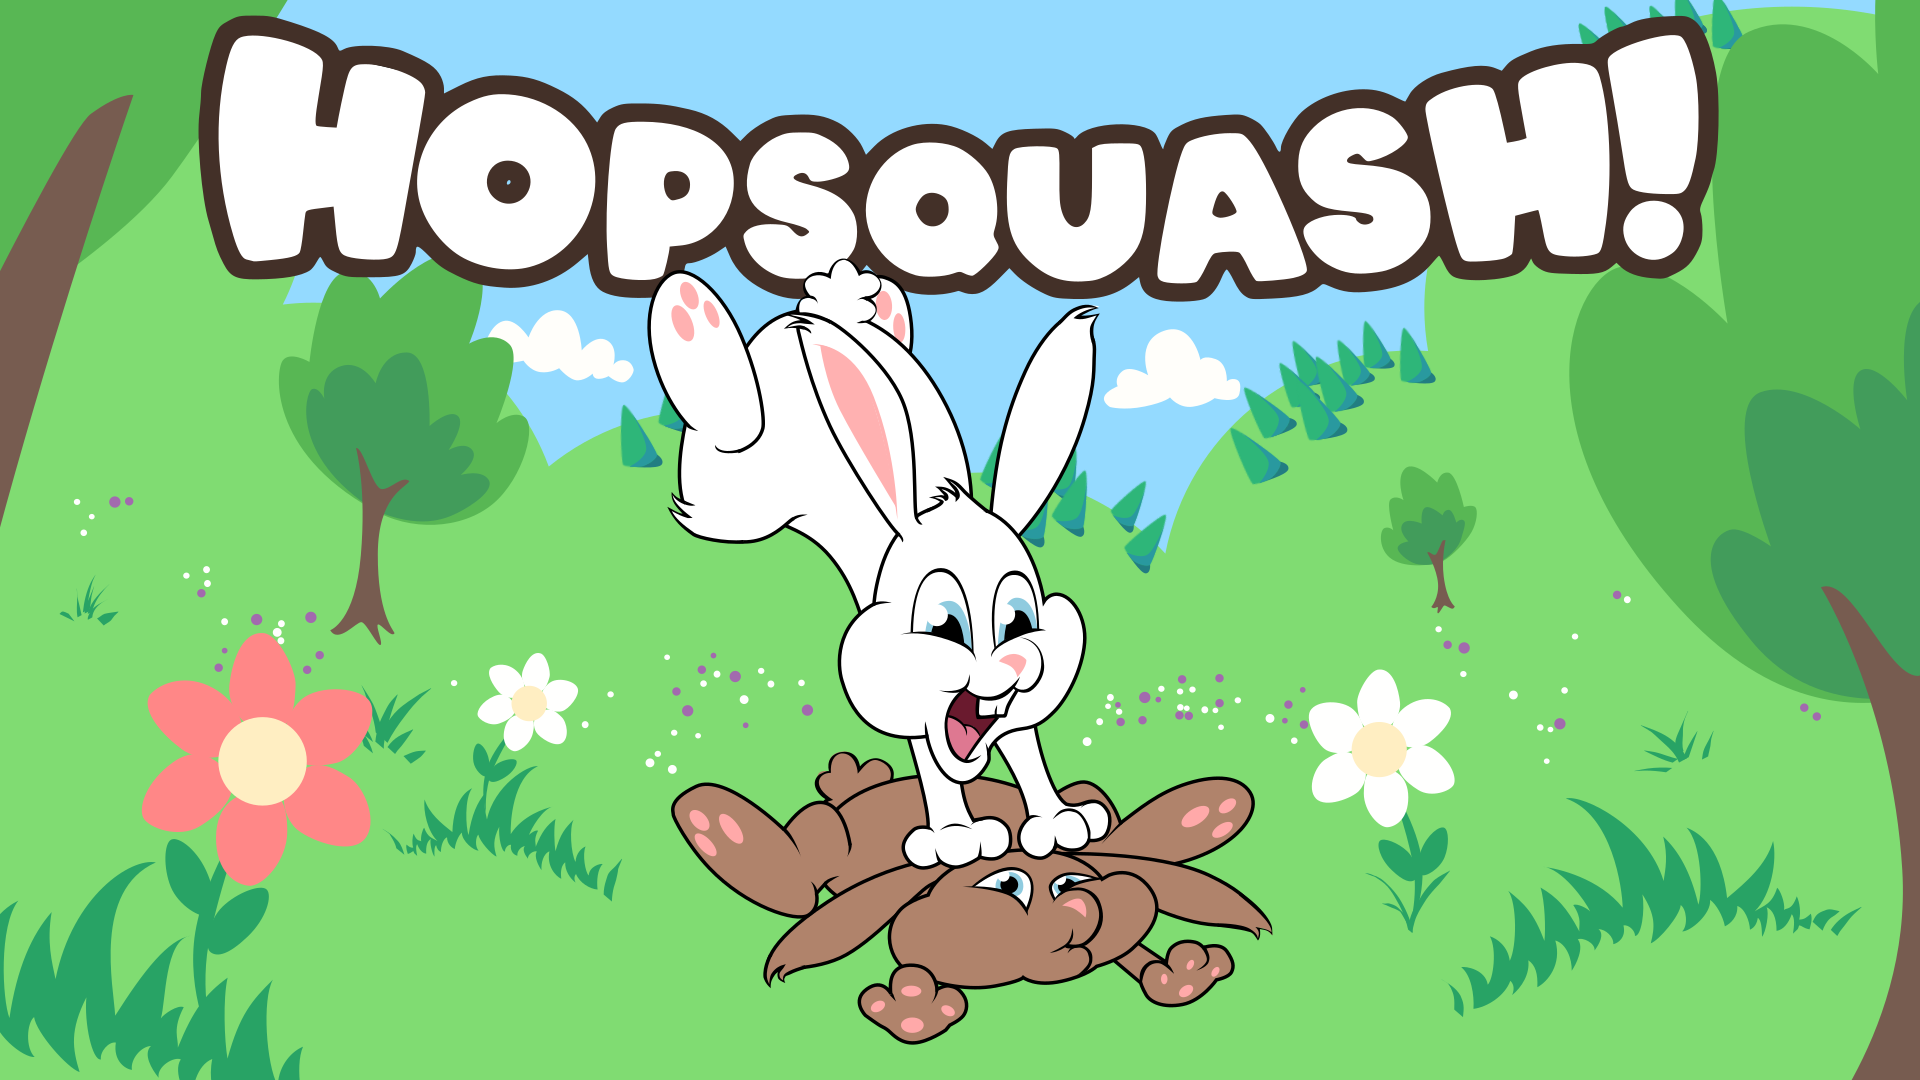 HopSquash! Demo